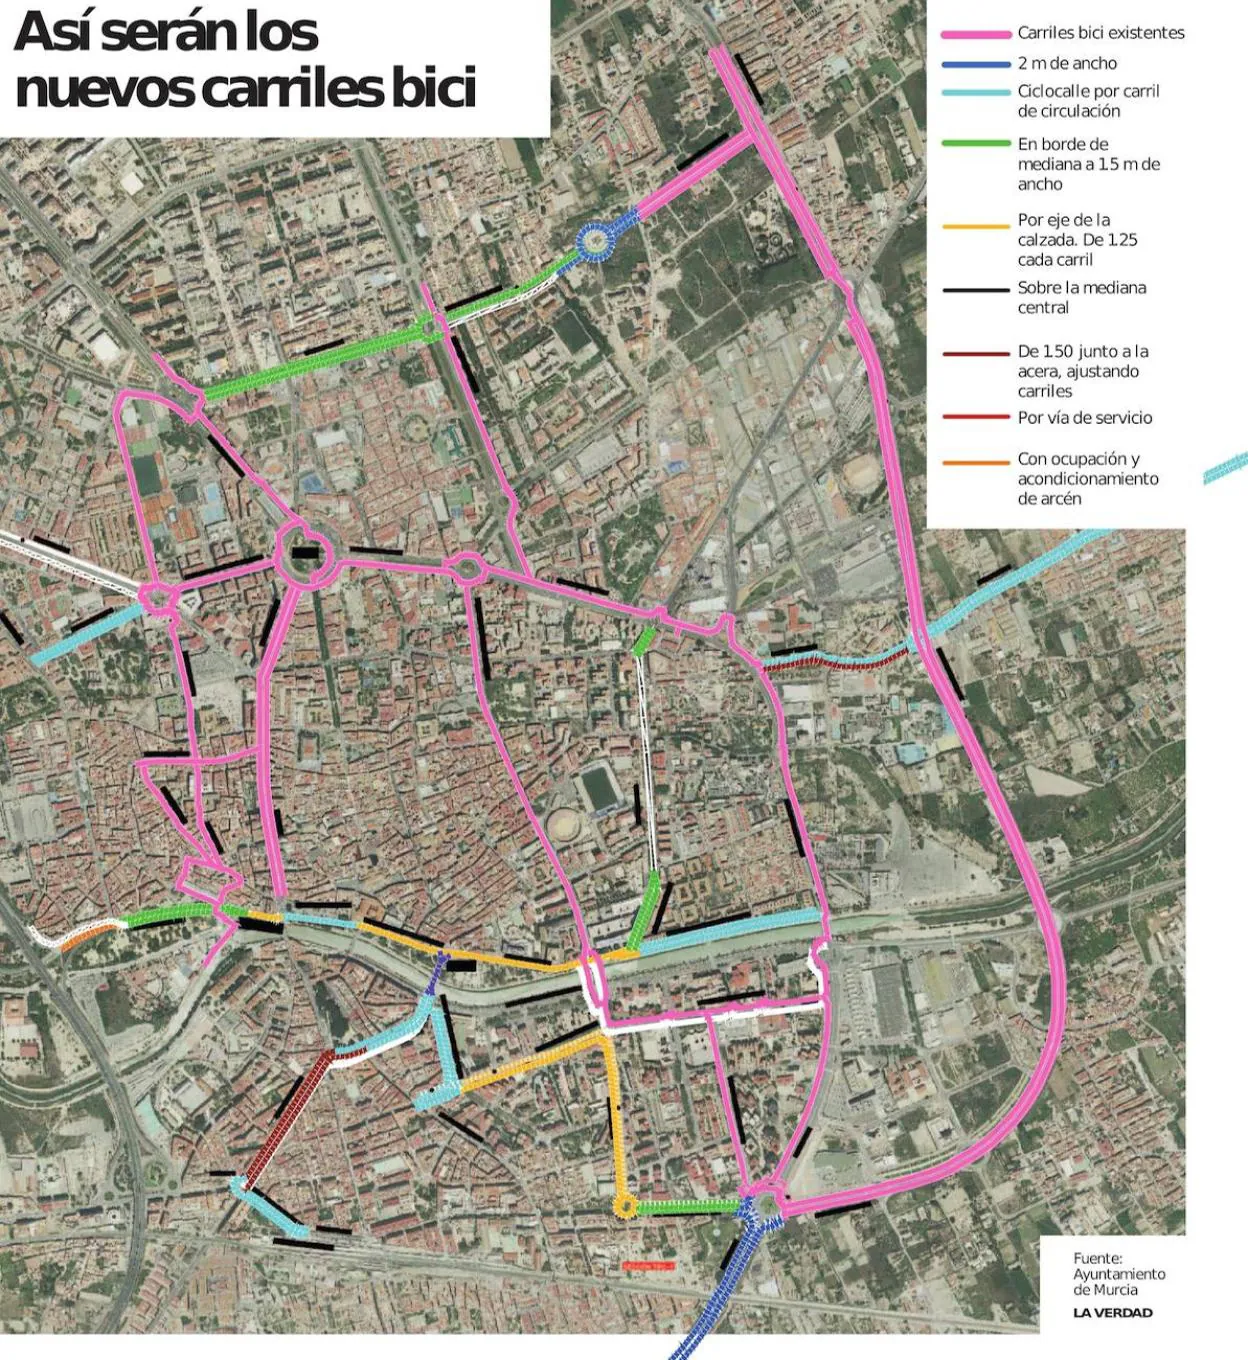 Los siete tramos provisionales de 'bici vías' de Murcia estarán disponibles a partir del próximo otoño